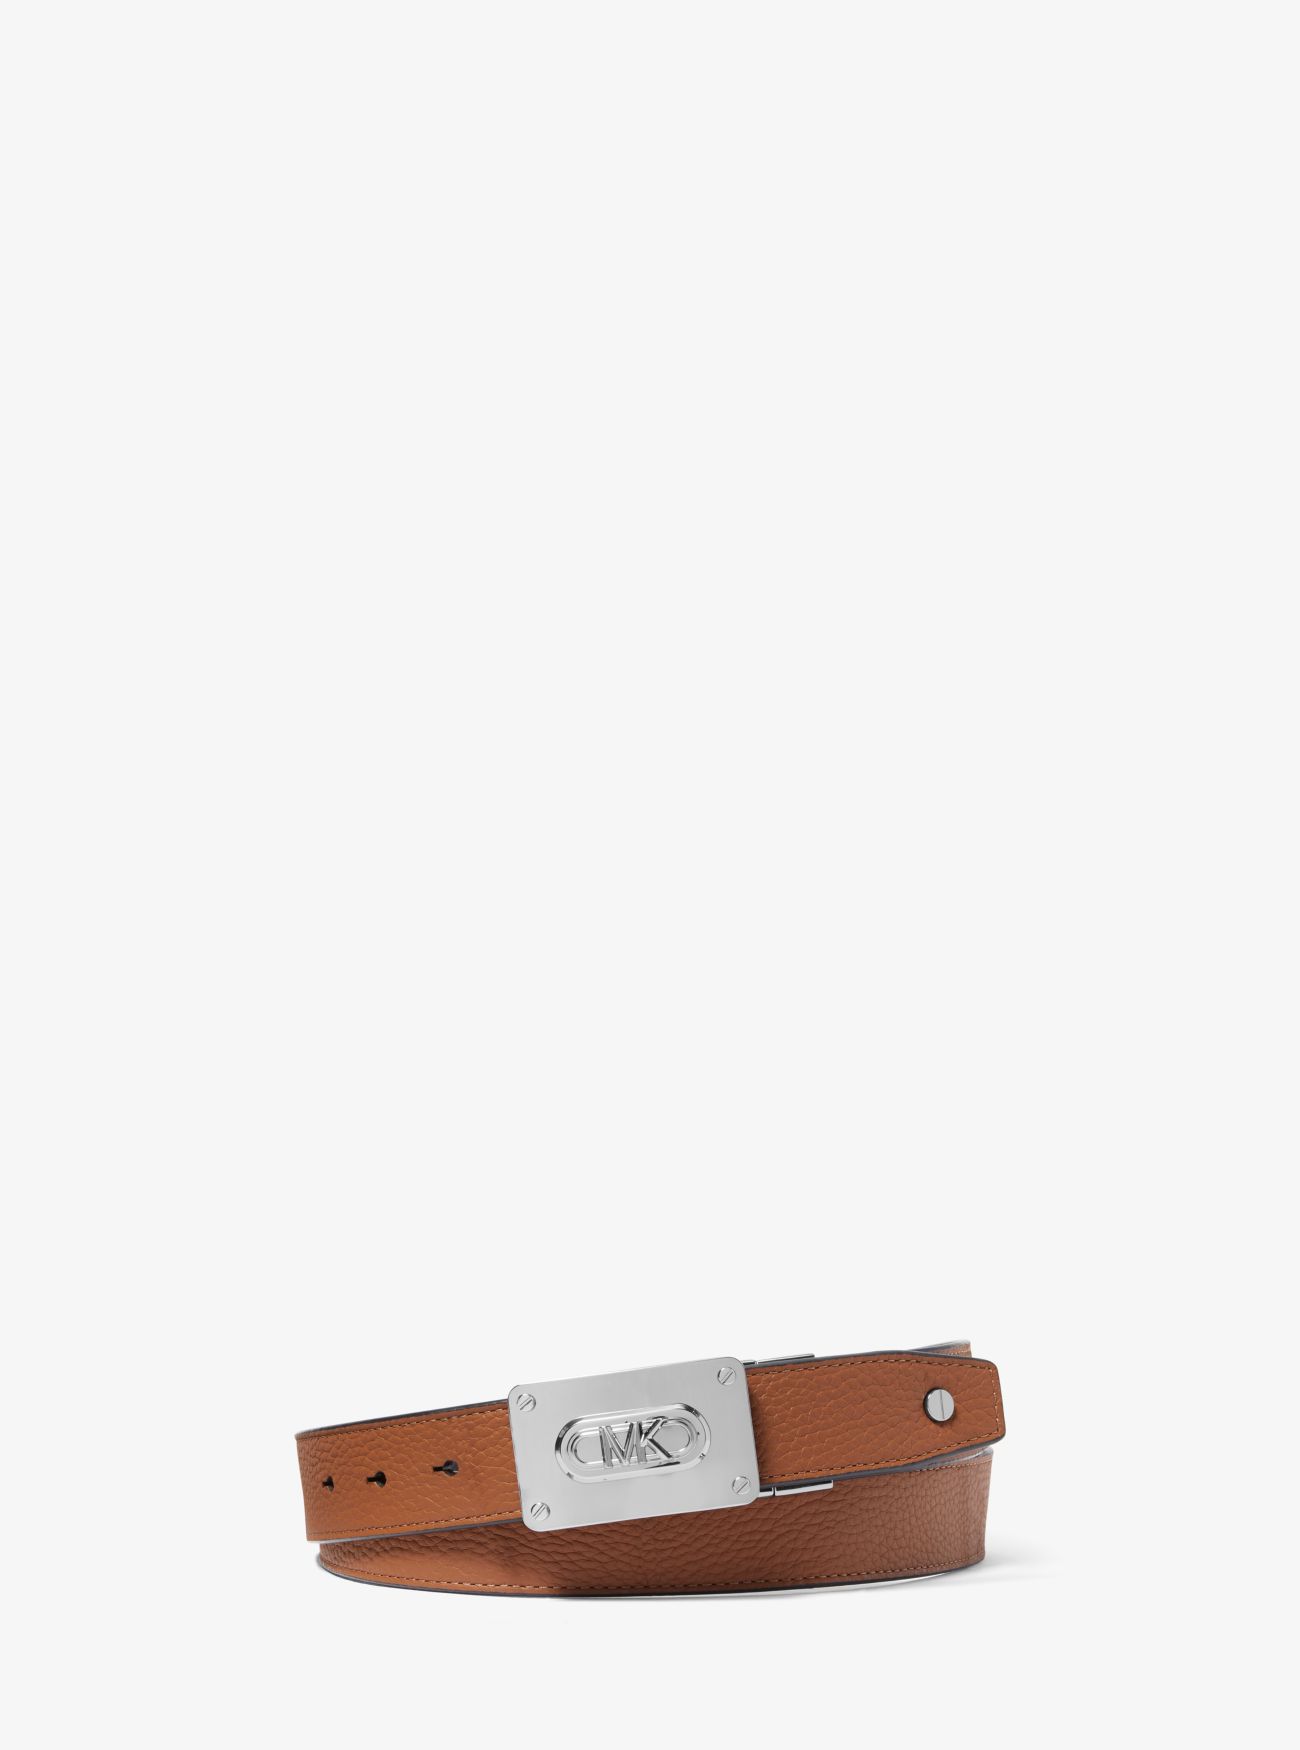 MKCinturón reversible de piel con logotipo - Luggage(Marrón) - Michael Kors